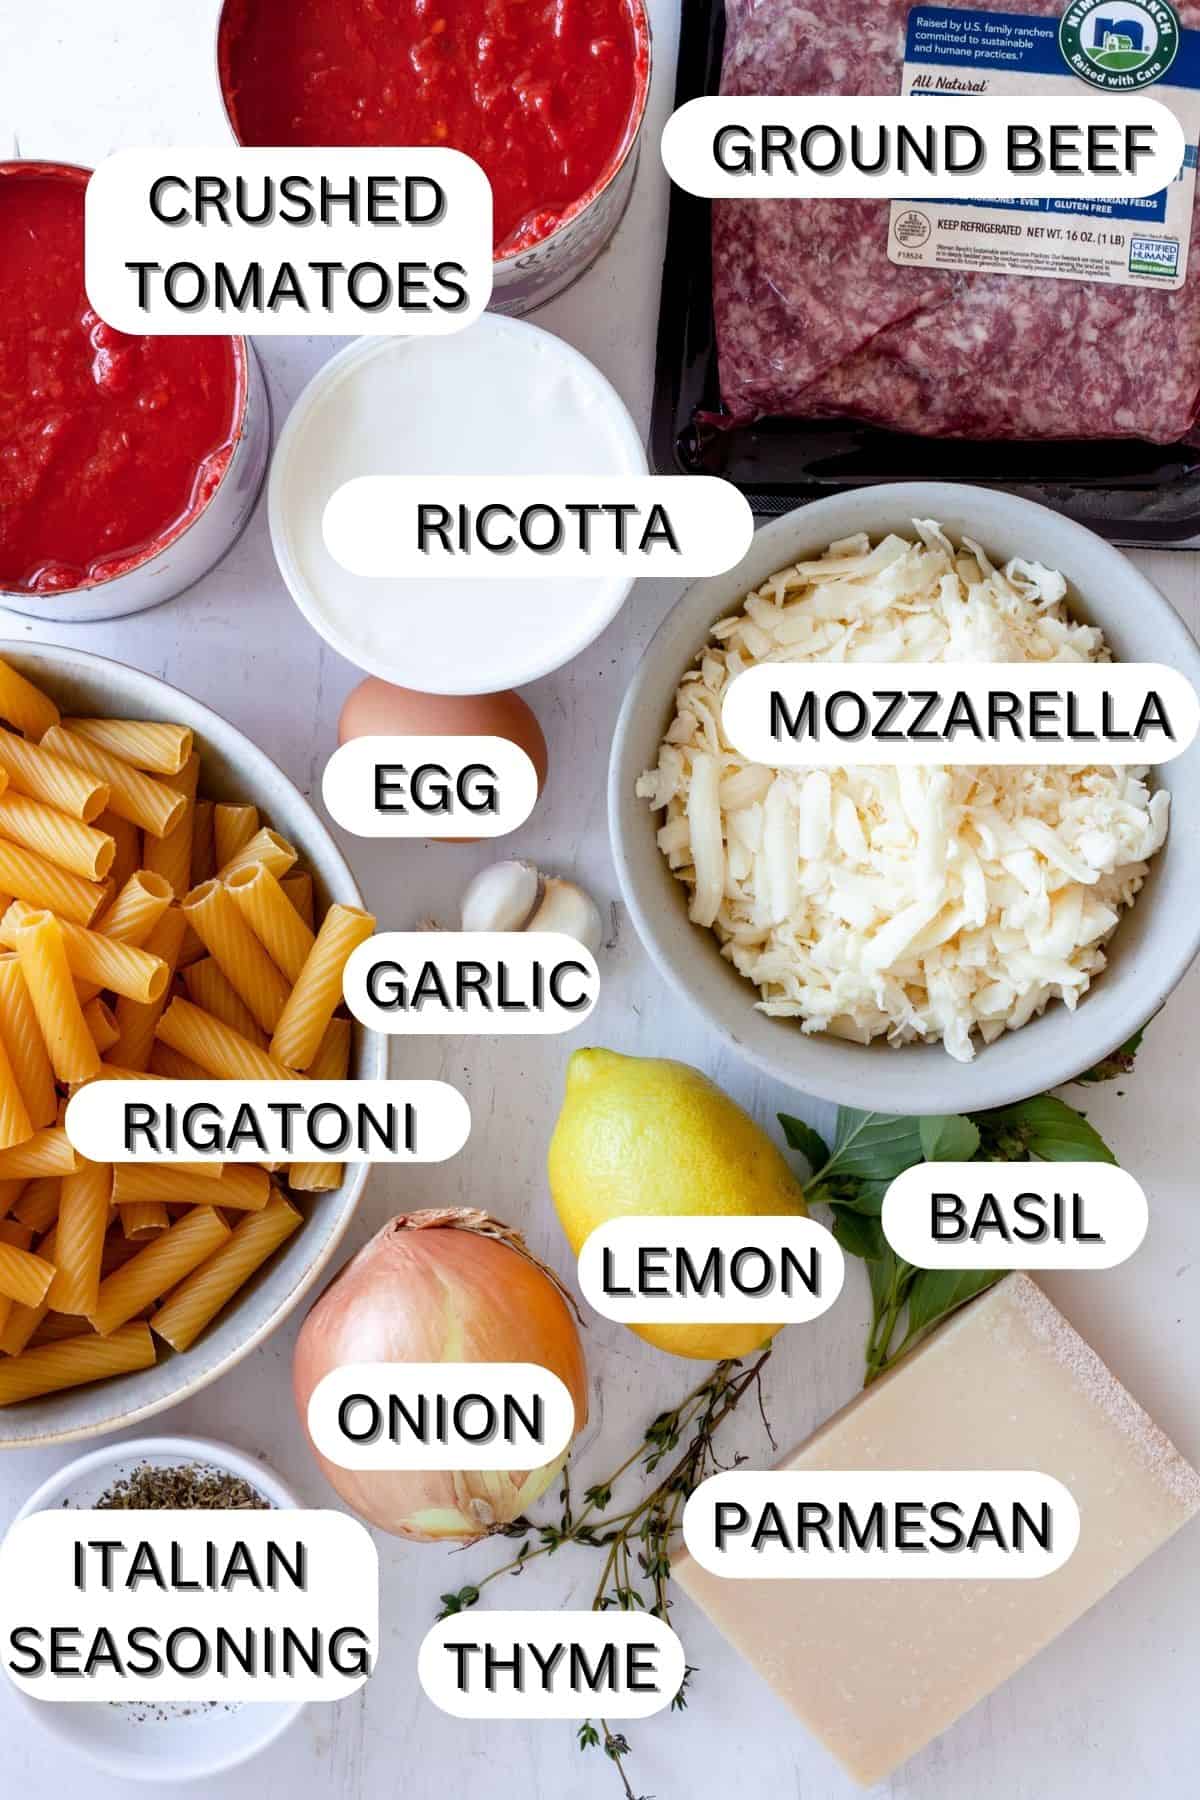 Ingredients for rigatoni al forno.